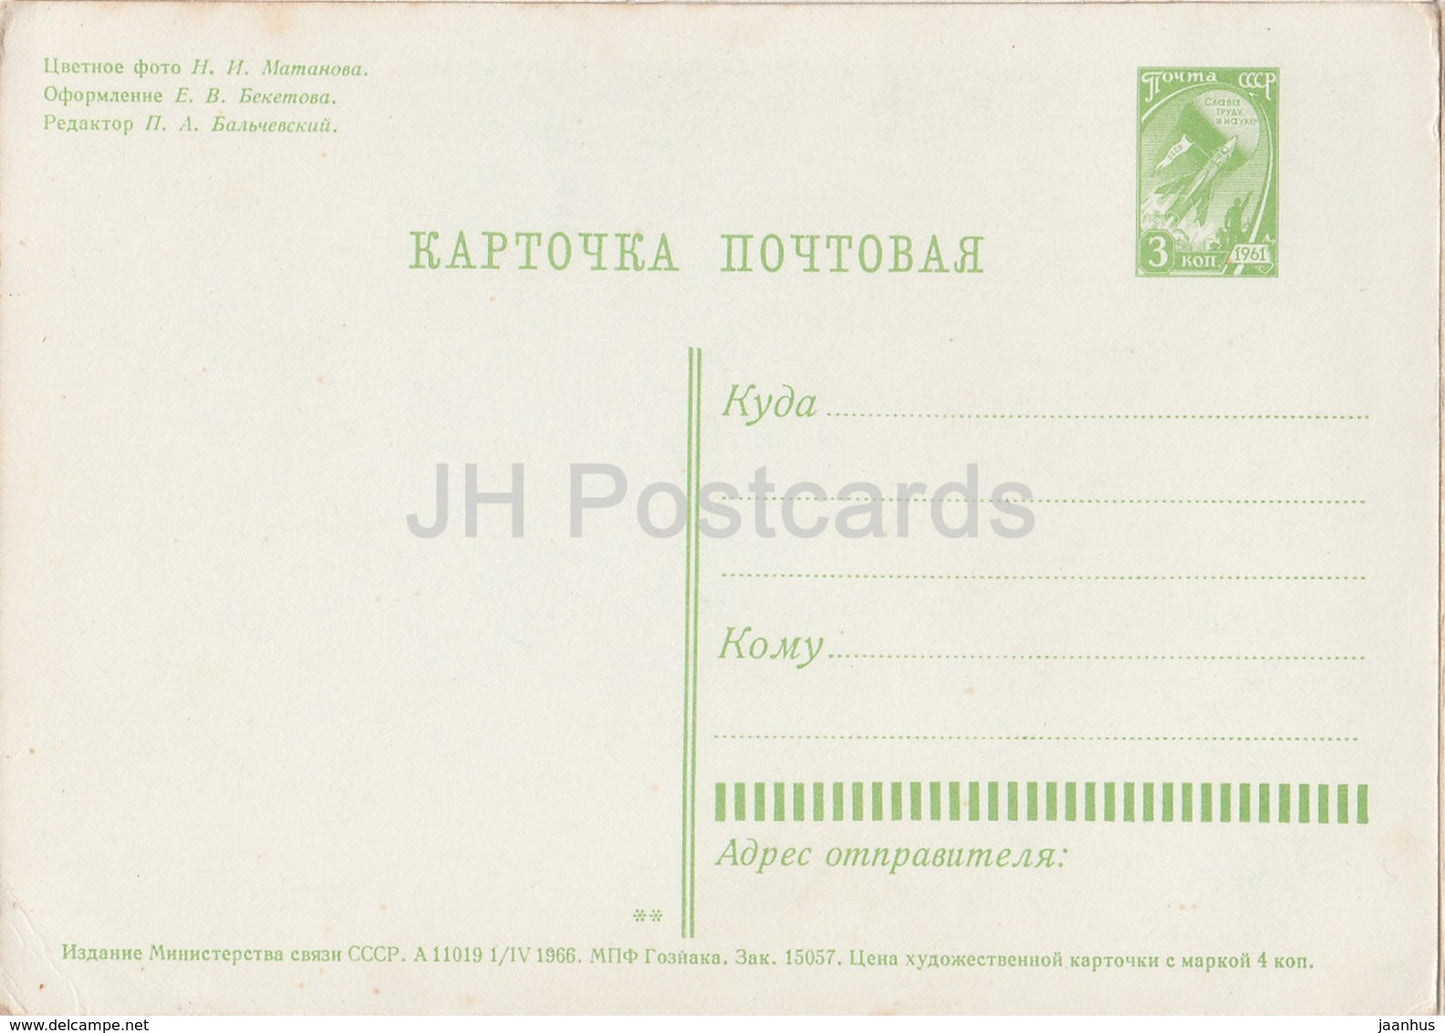 Carte de vœux du Nouvel An - Forêt d’hiver - entier postal - 1966 - Russie URSS - inutilisée